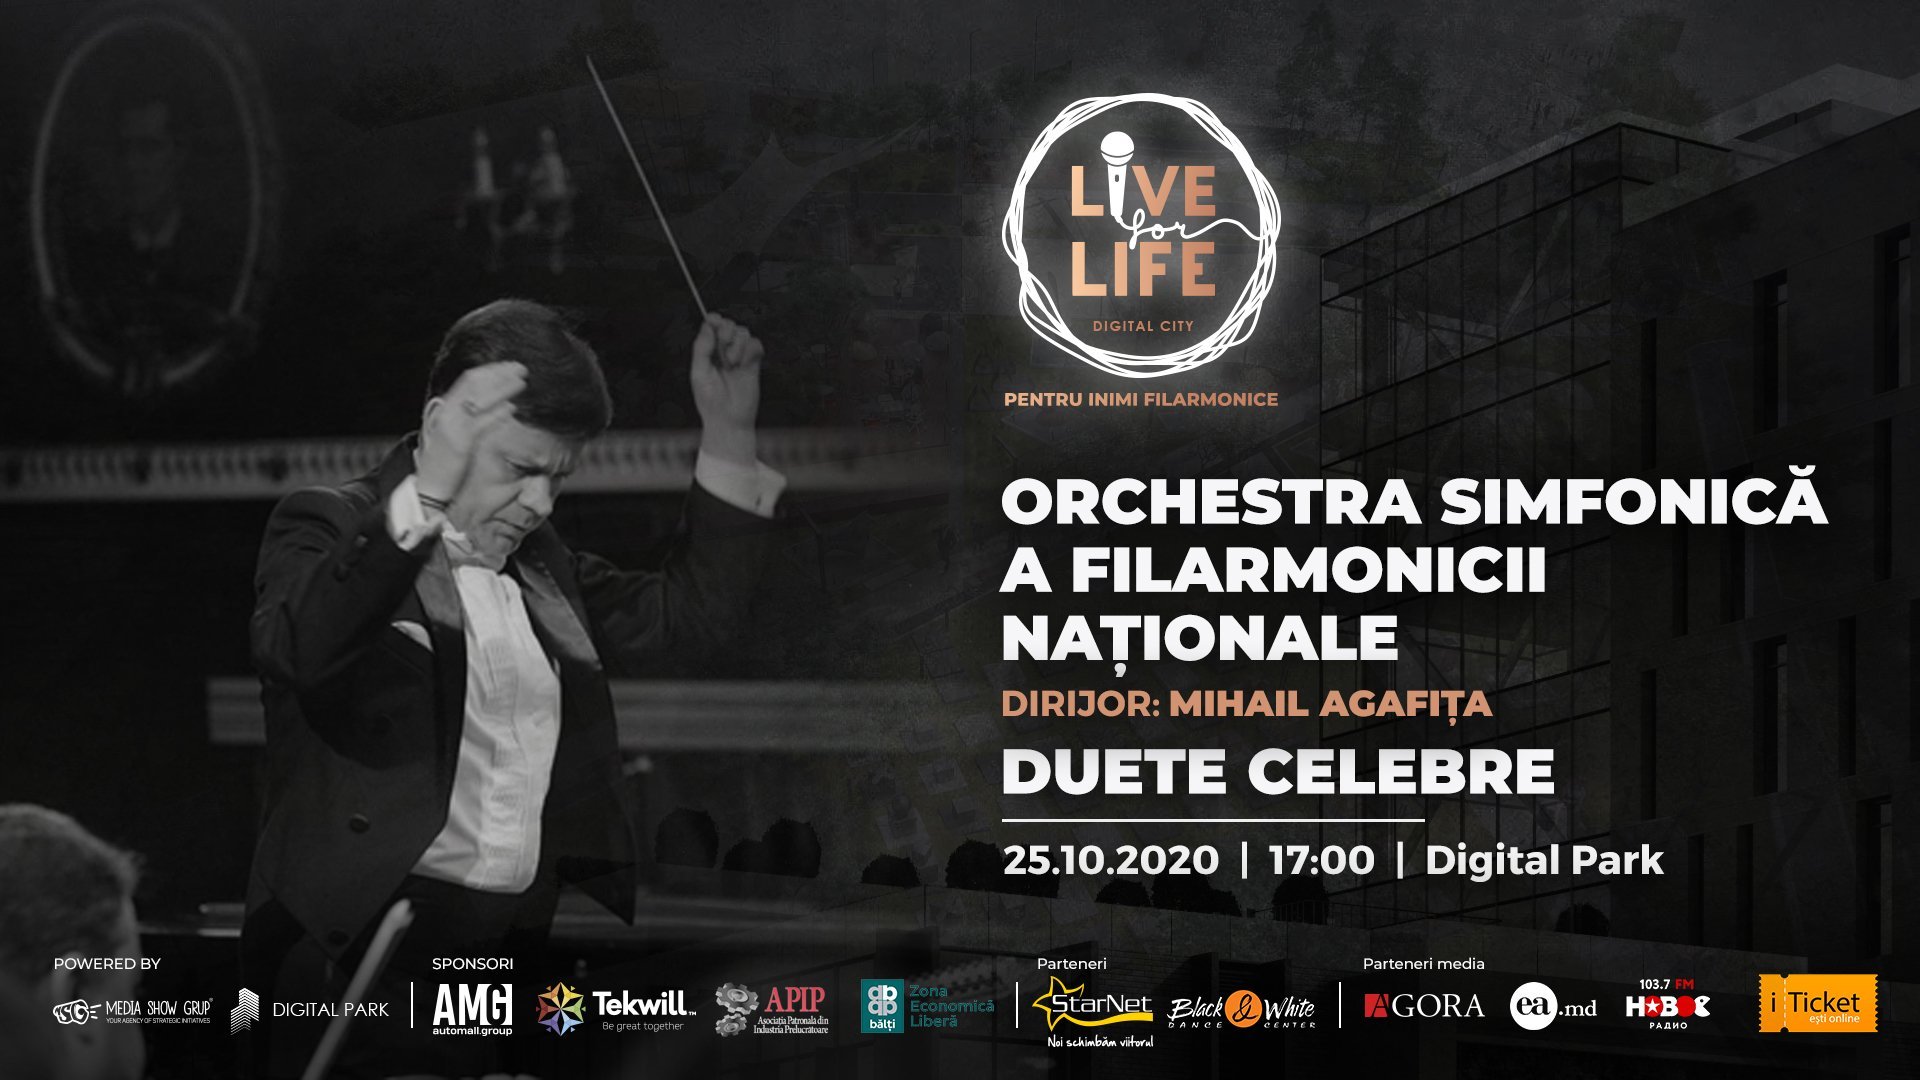 LIVE FOR LIFE. DUETE CELEBRE CU ORCHESTRA SIMFONICĂ A FILARMONICII NAȚIONALE